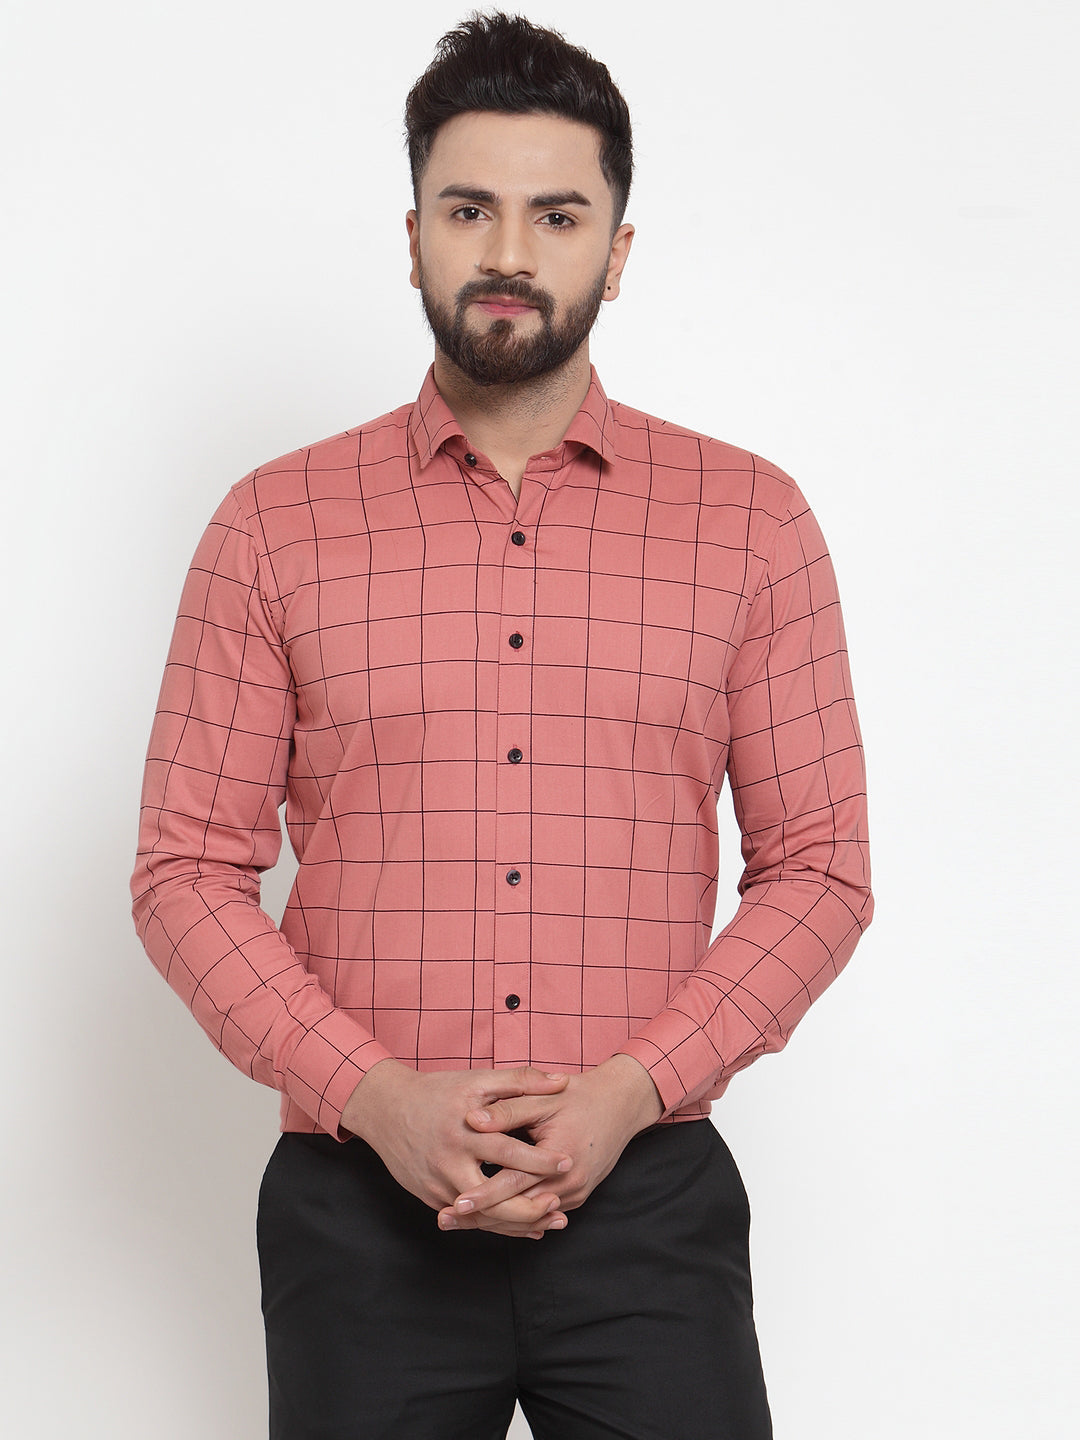 Men's Peach Cotton Checked Formal Shirts ( SF 742Peach ) - Jainish